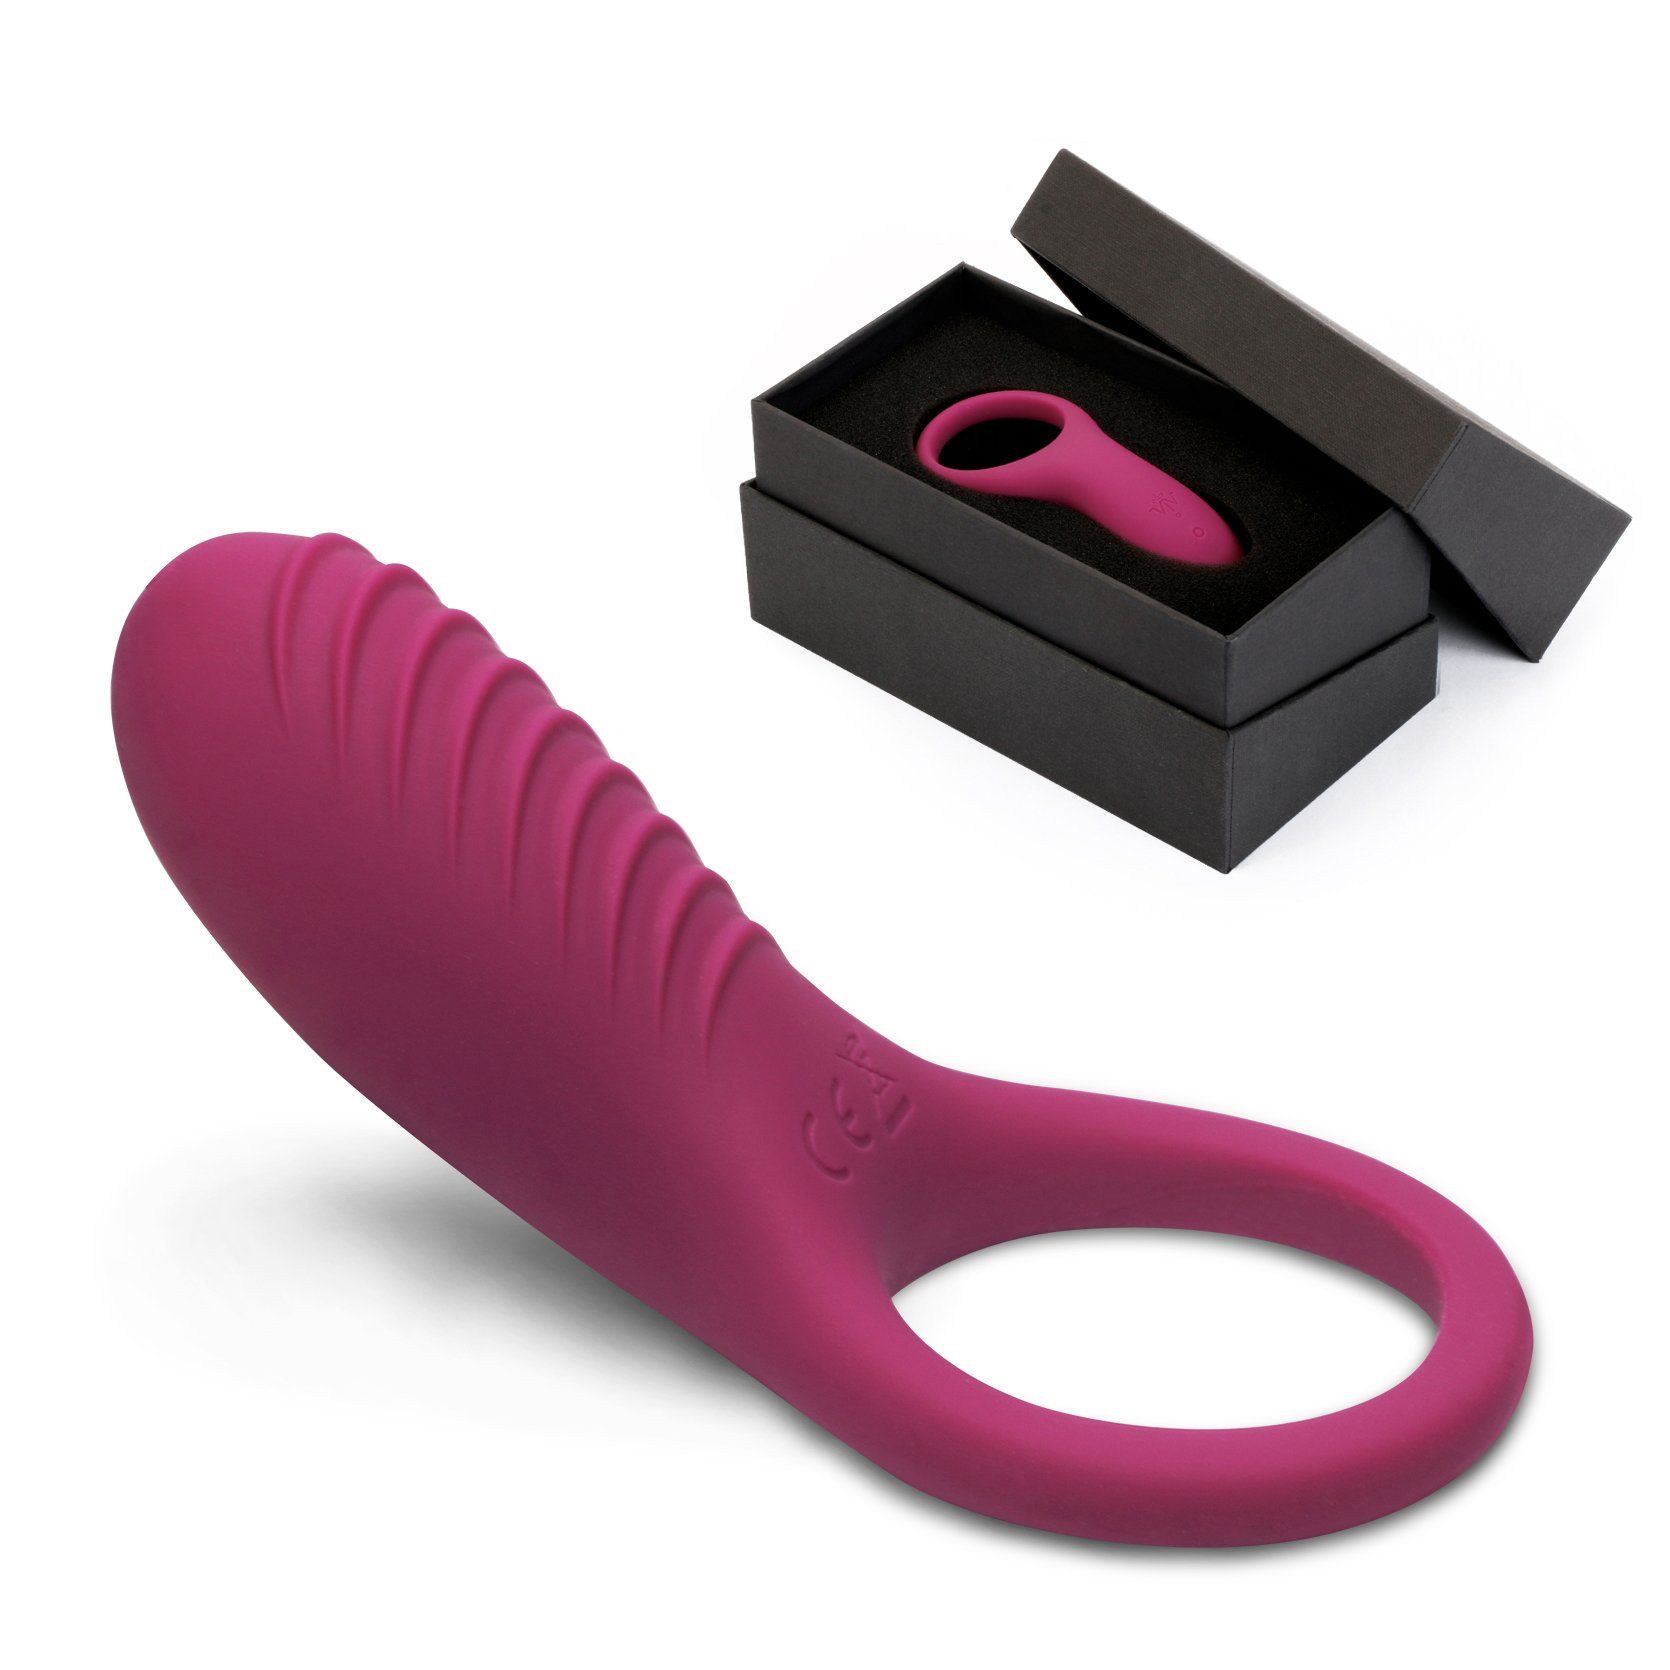 Bigger cheaper find sex vibrator